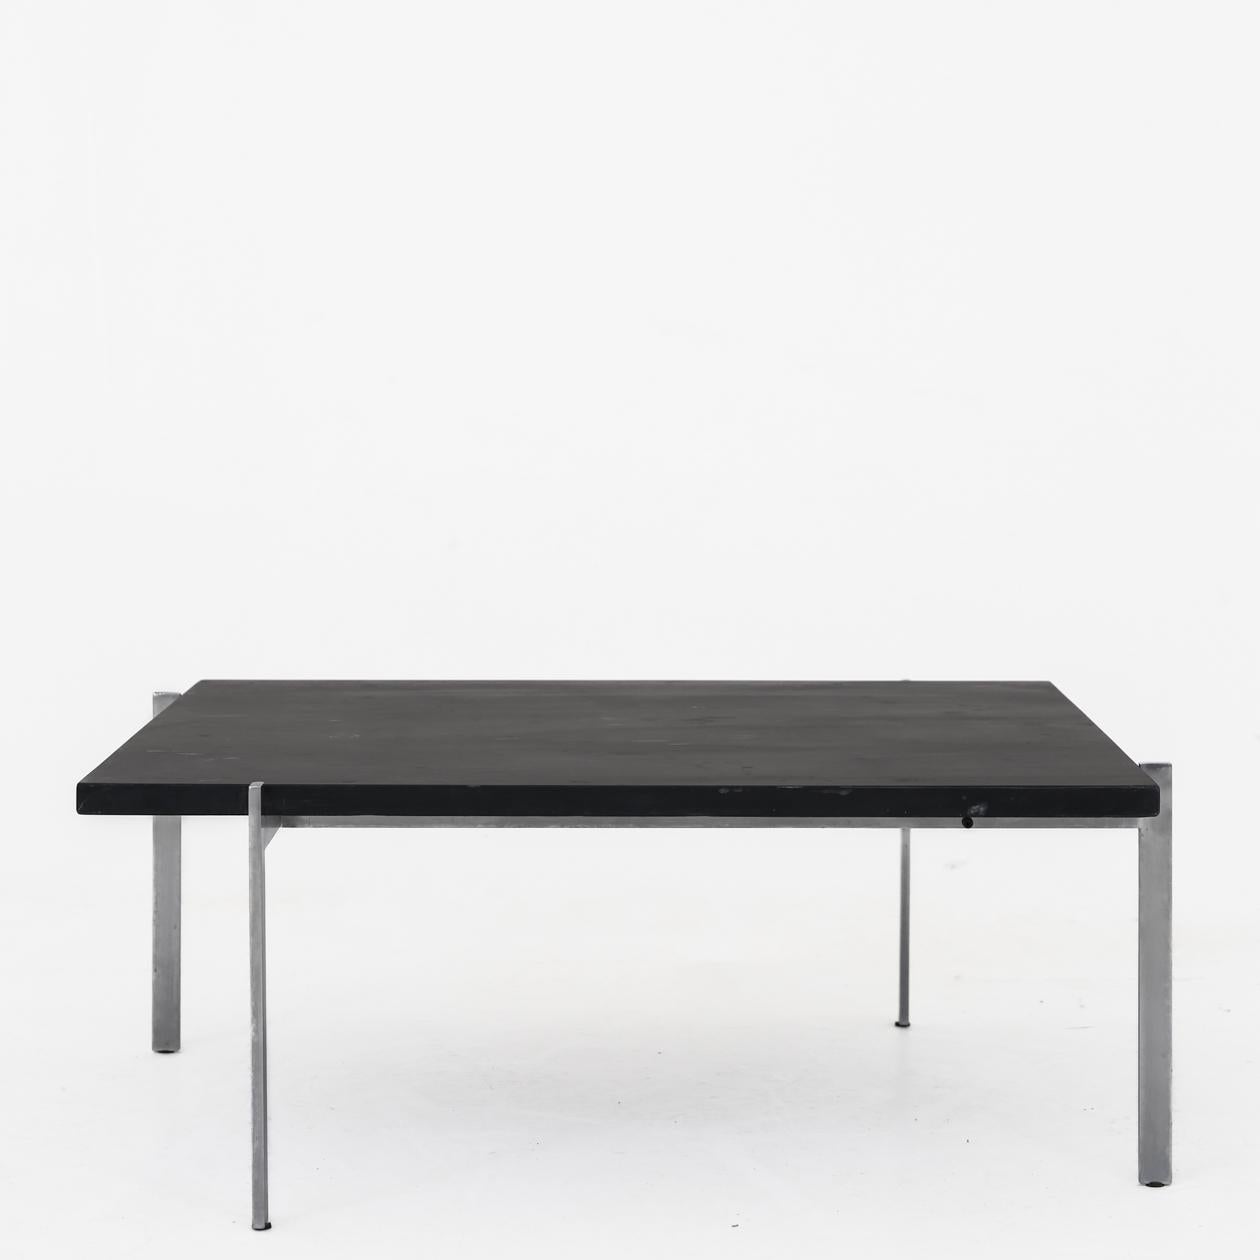 PK 61 - Table basse avec plateau en ardoise et structure en acier. Poul Kjærholm / E. Kold Christensen